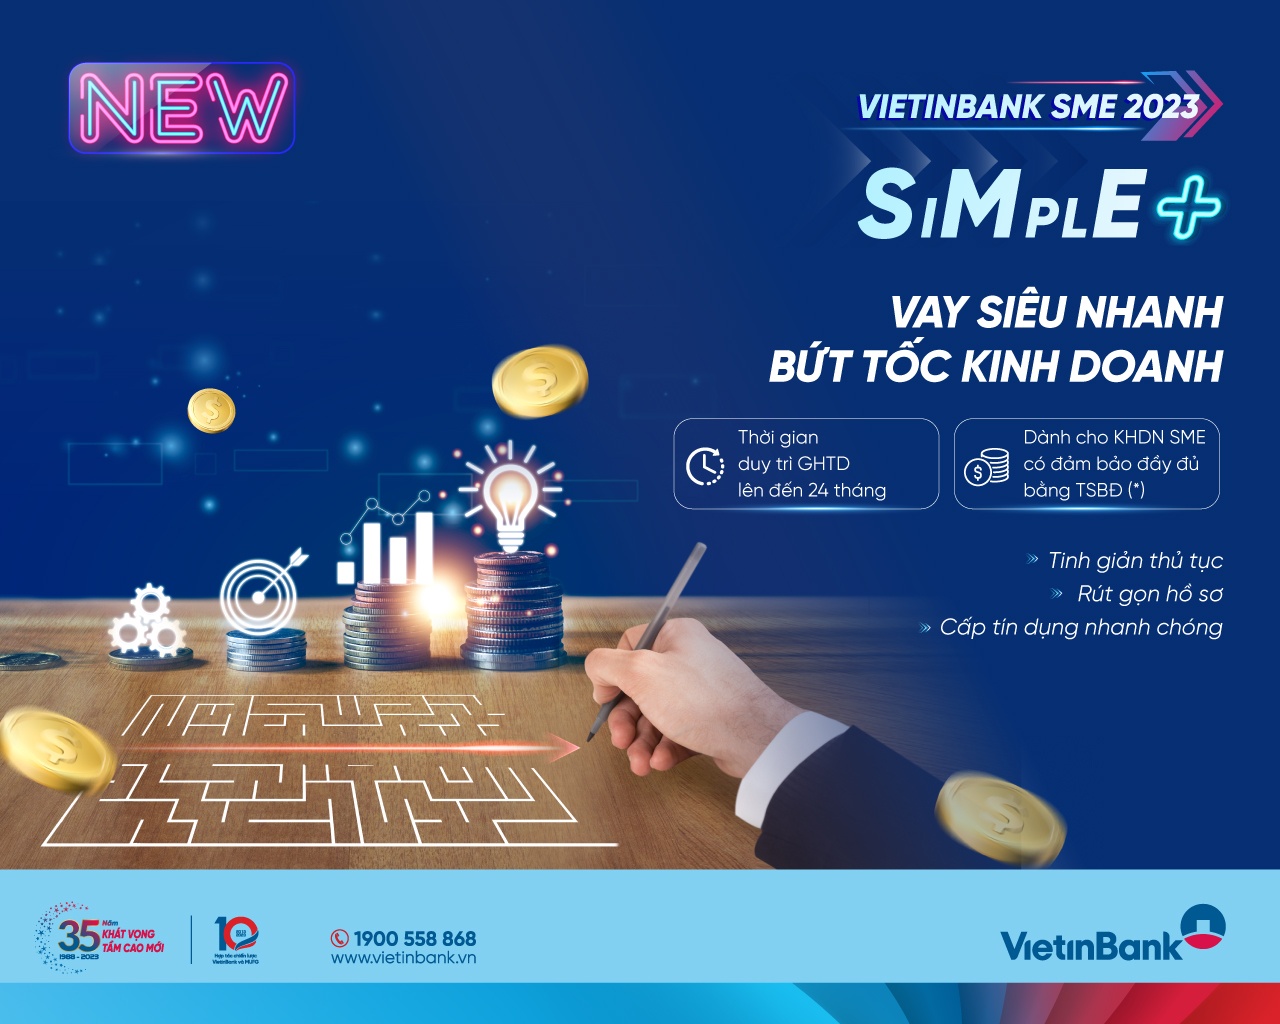 VietinBank SME SIMPLE+: Giải pháp đột phá dành cho doanh nghiệp nhỏ và vừa